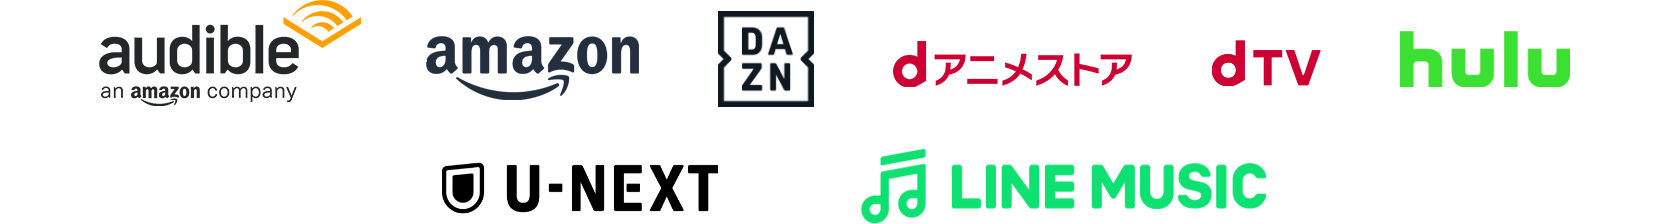 Amazonオーディブル Amazonプライム DAZN dアニメストア hulu U-NEXT LINE MUSIC